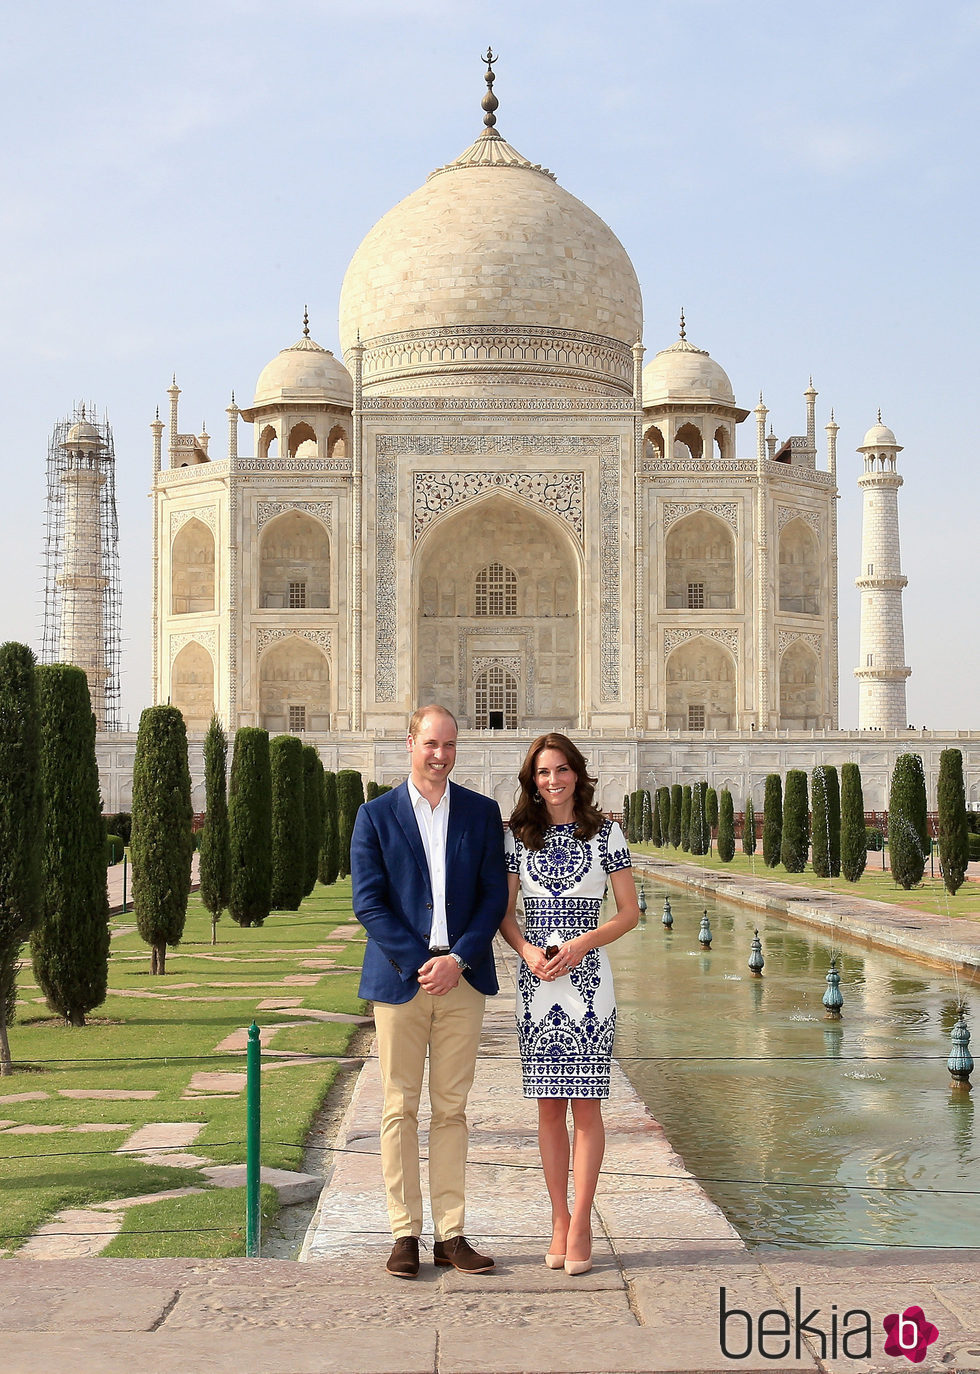 Los Duques de Cambridge delante del Taj Mahal durante su visita a India